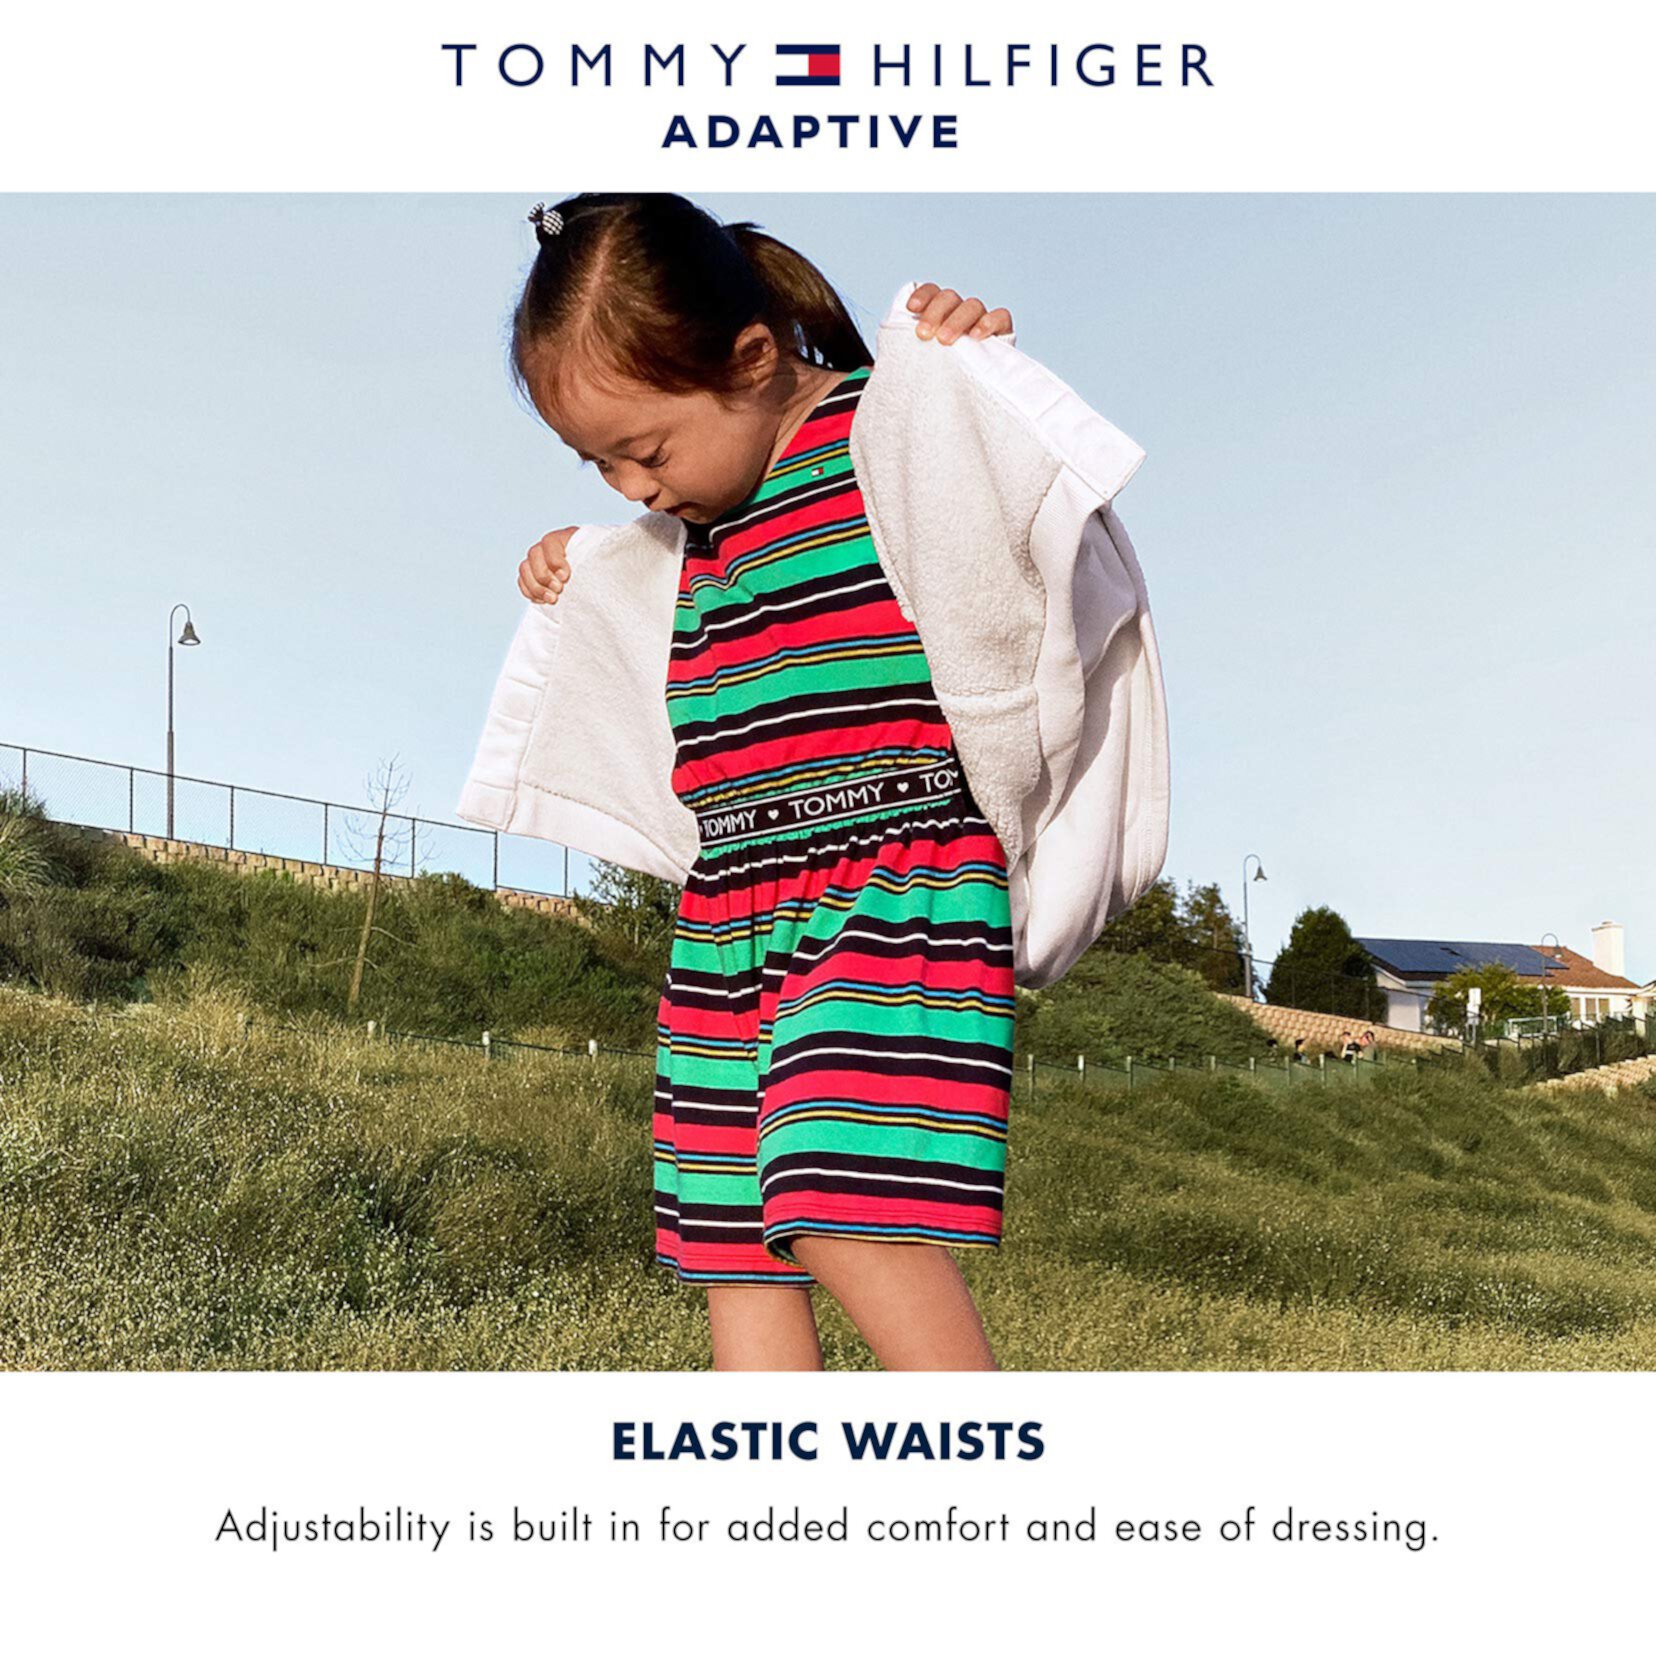 Леггинсы Burset с эластичной резинкой на талии (для детей младшего и старшего возраста) Tommy Hilfiger Adaptive